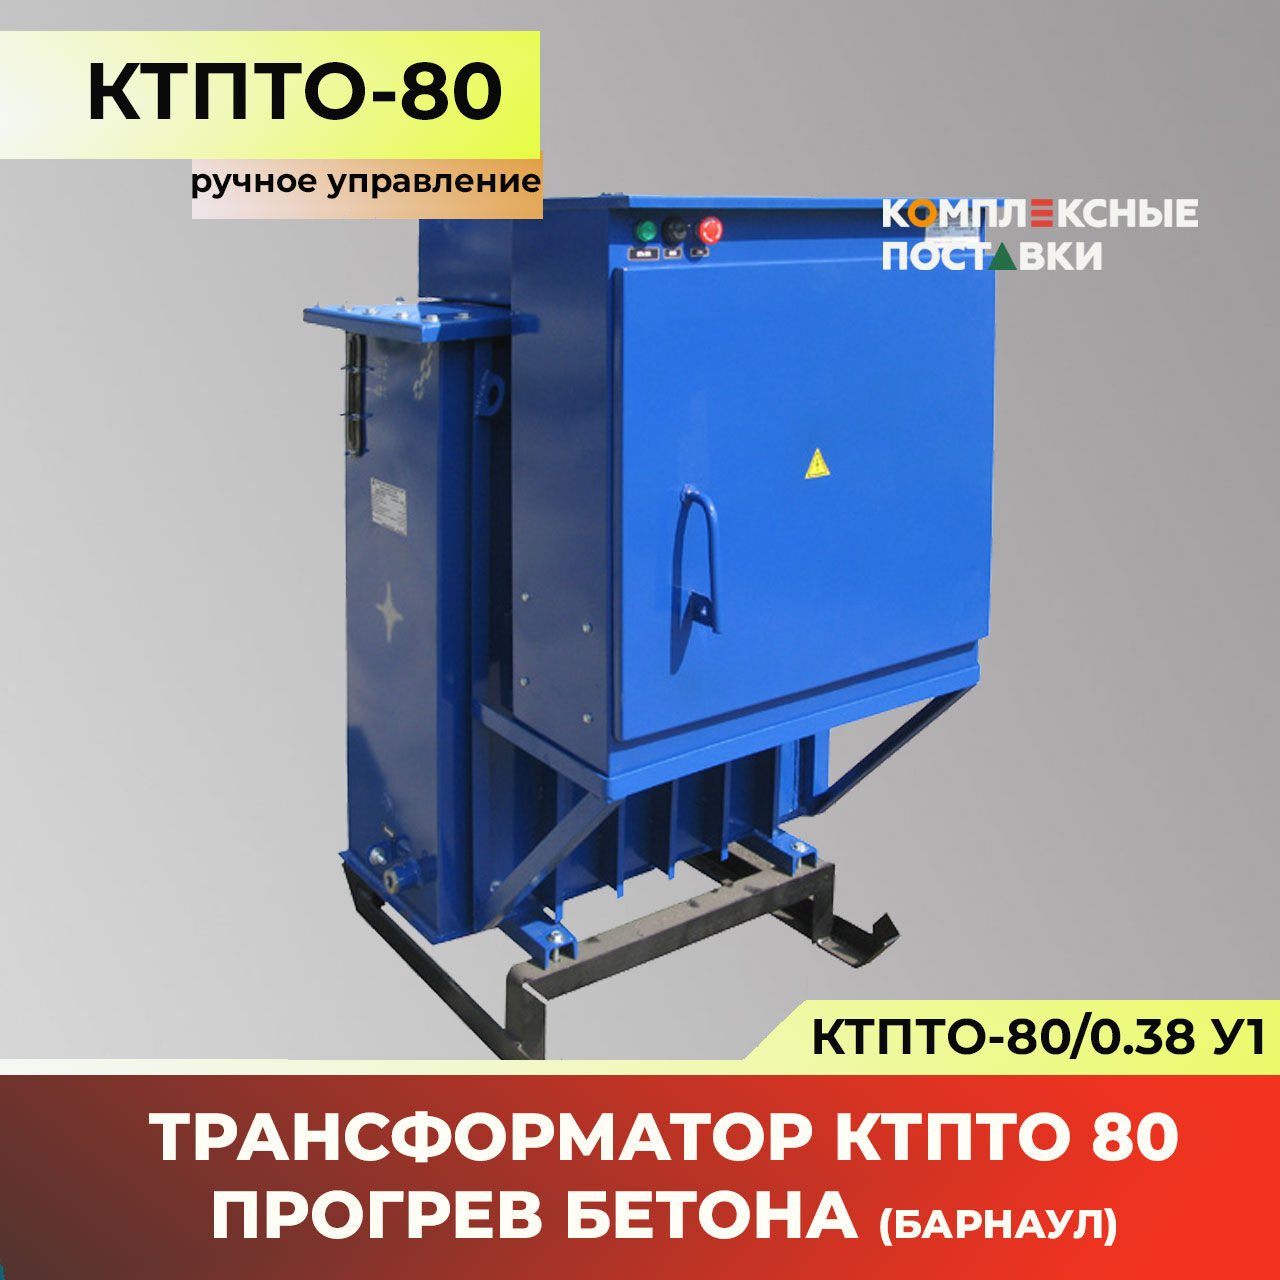 КТПТО-80 станция прогрева бетона ручное управление (Барнаул)